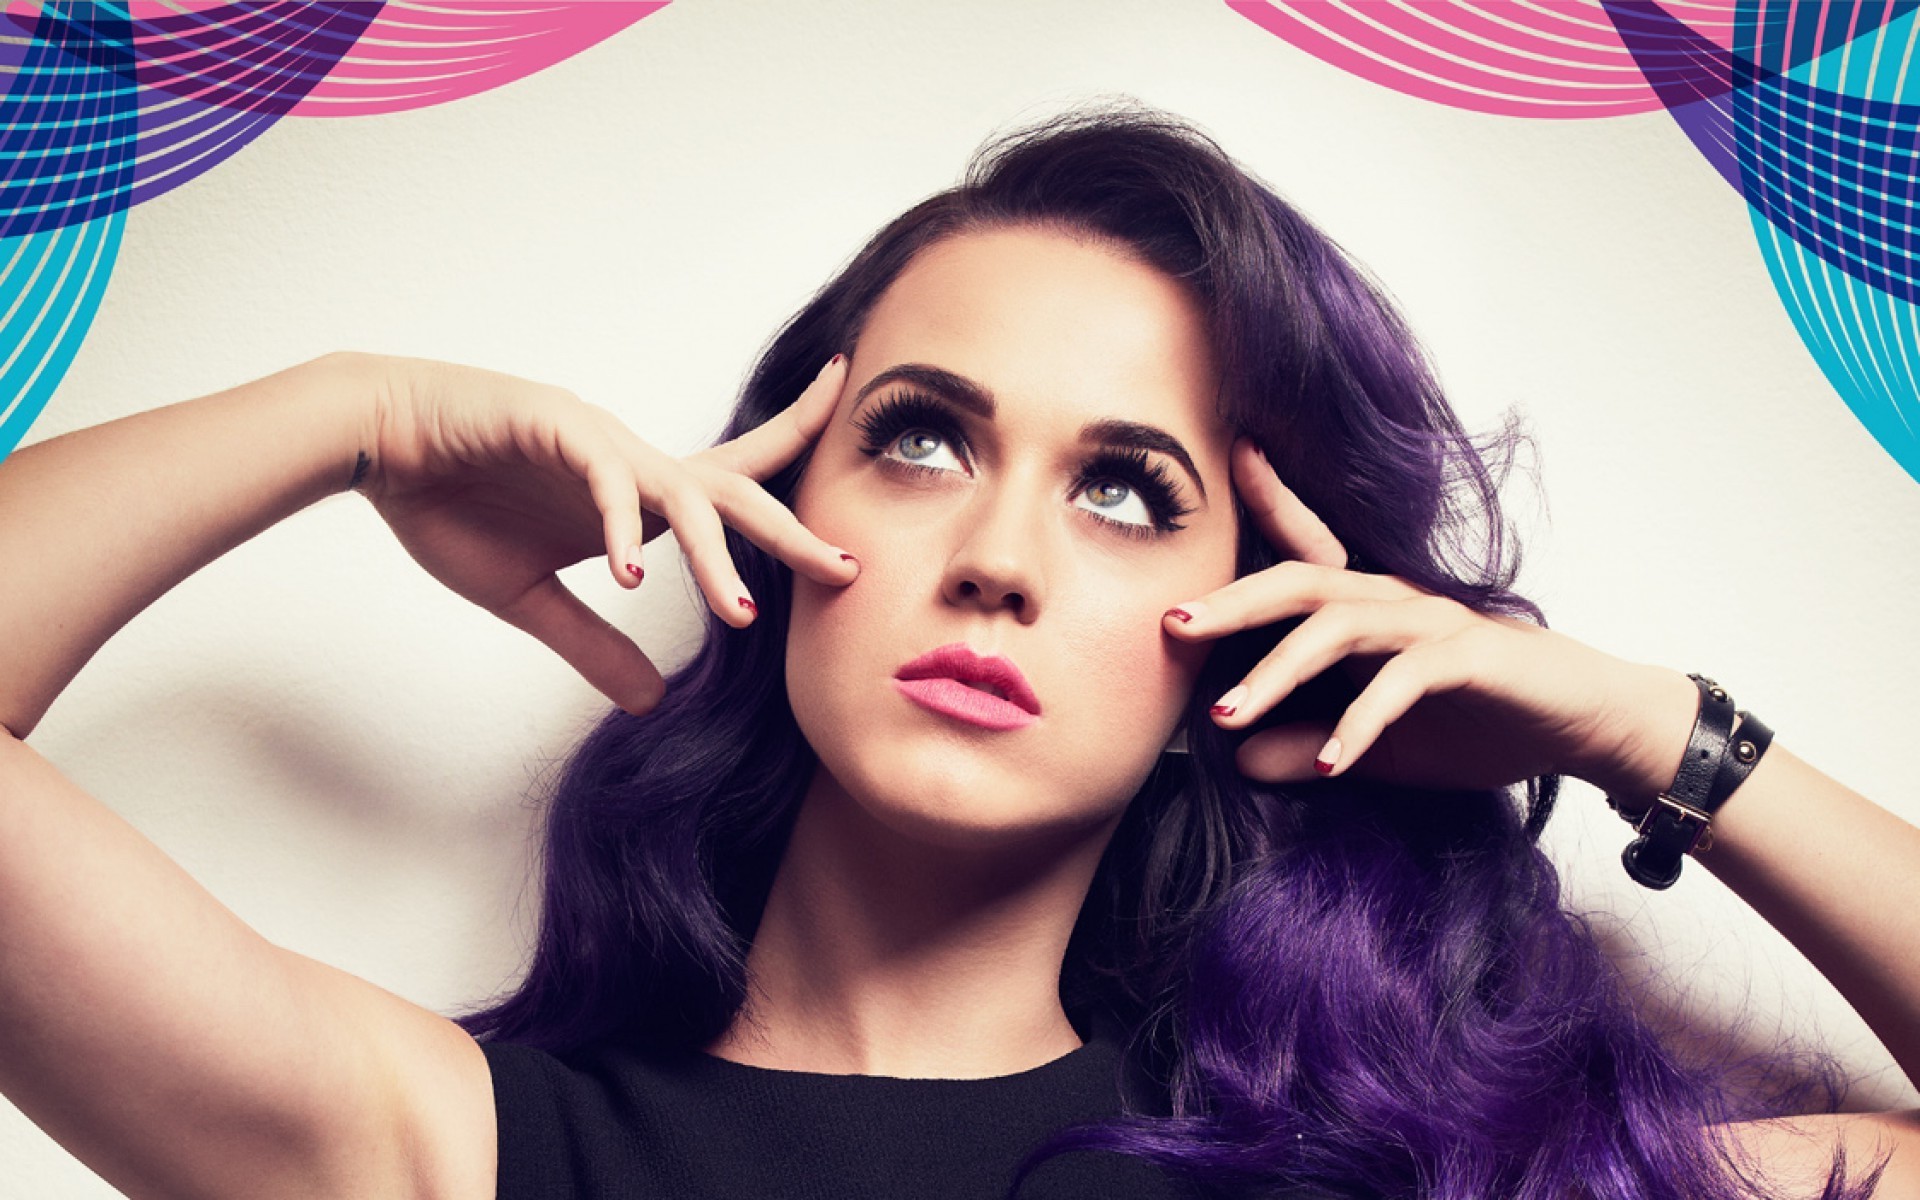 Katy Perry estrena el vídeo de “Rise”